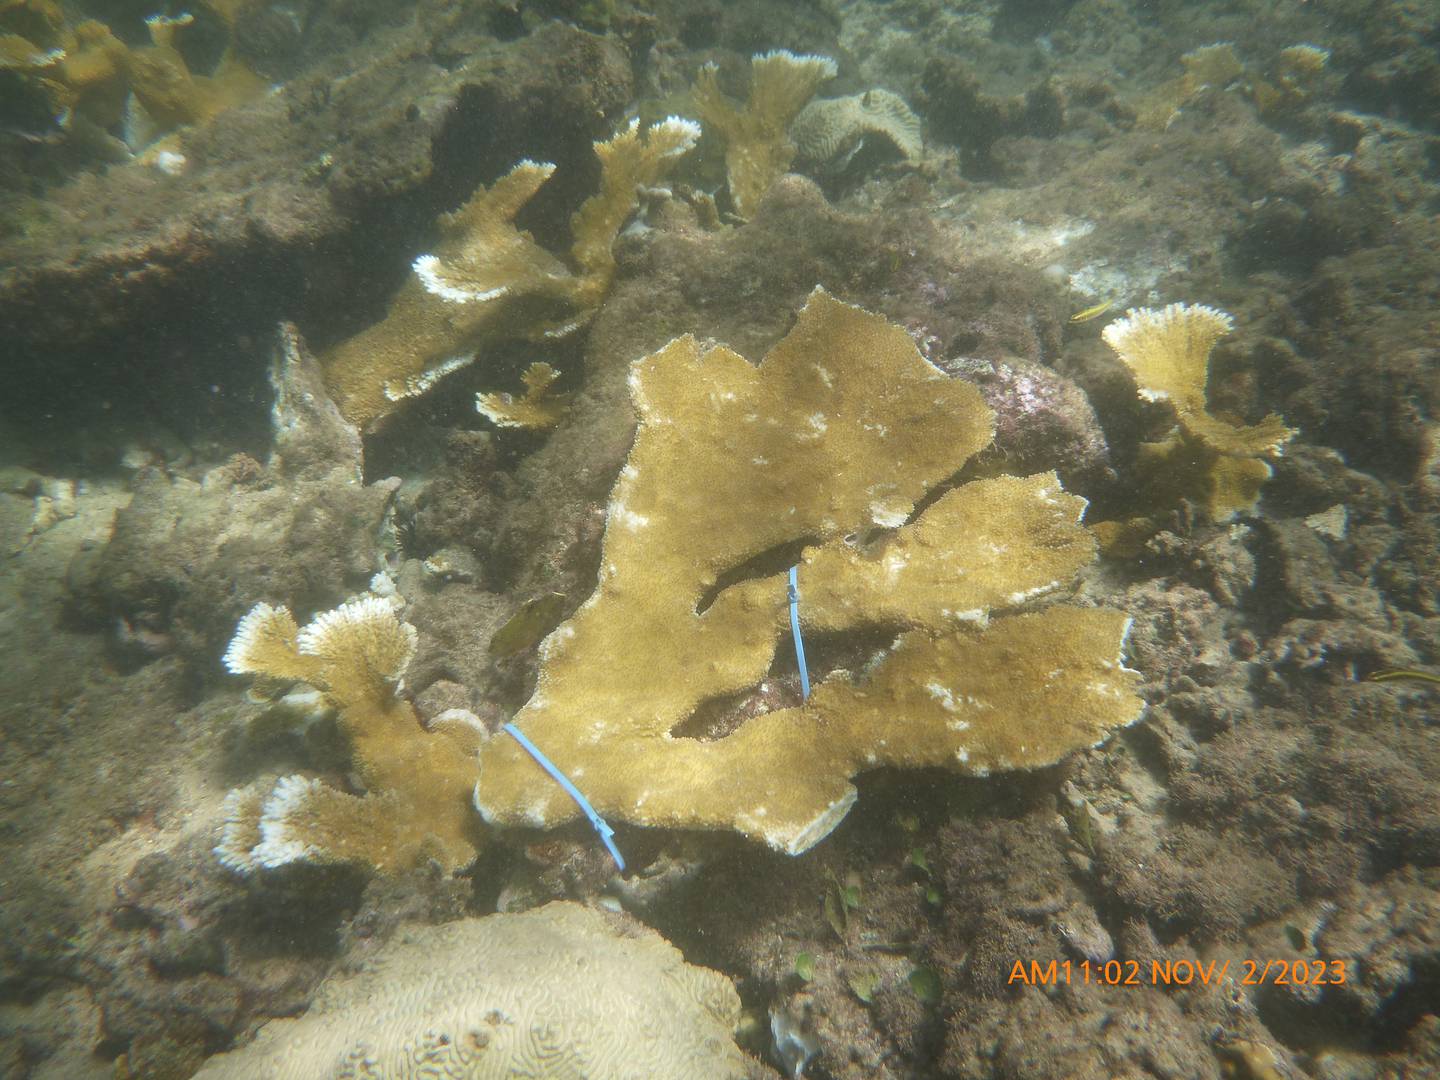 VIDAS ha sembrado corales de la especie de Acropora palmata en la costa norte del país. Foto suminitradas por VIDAS